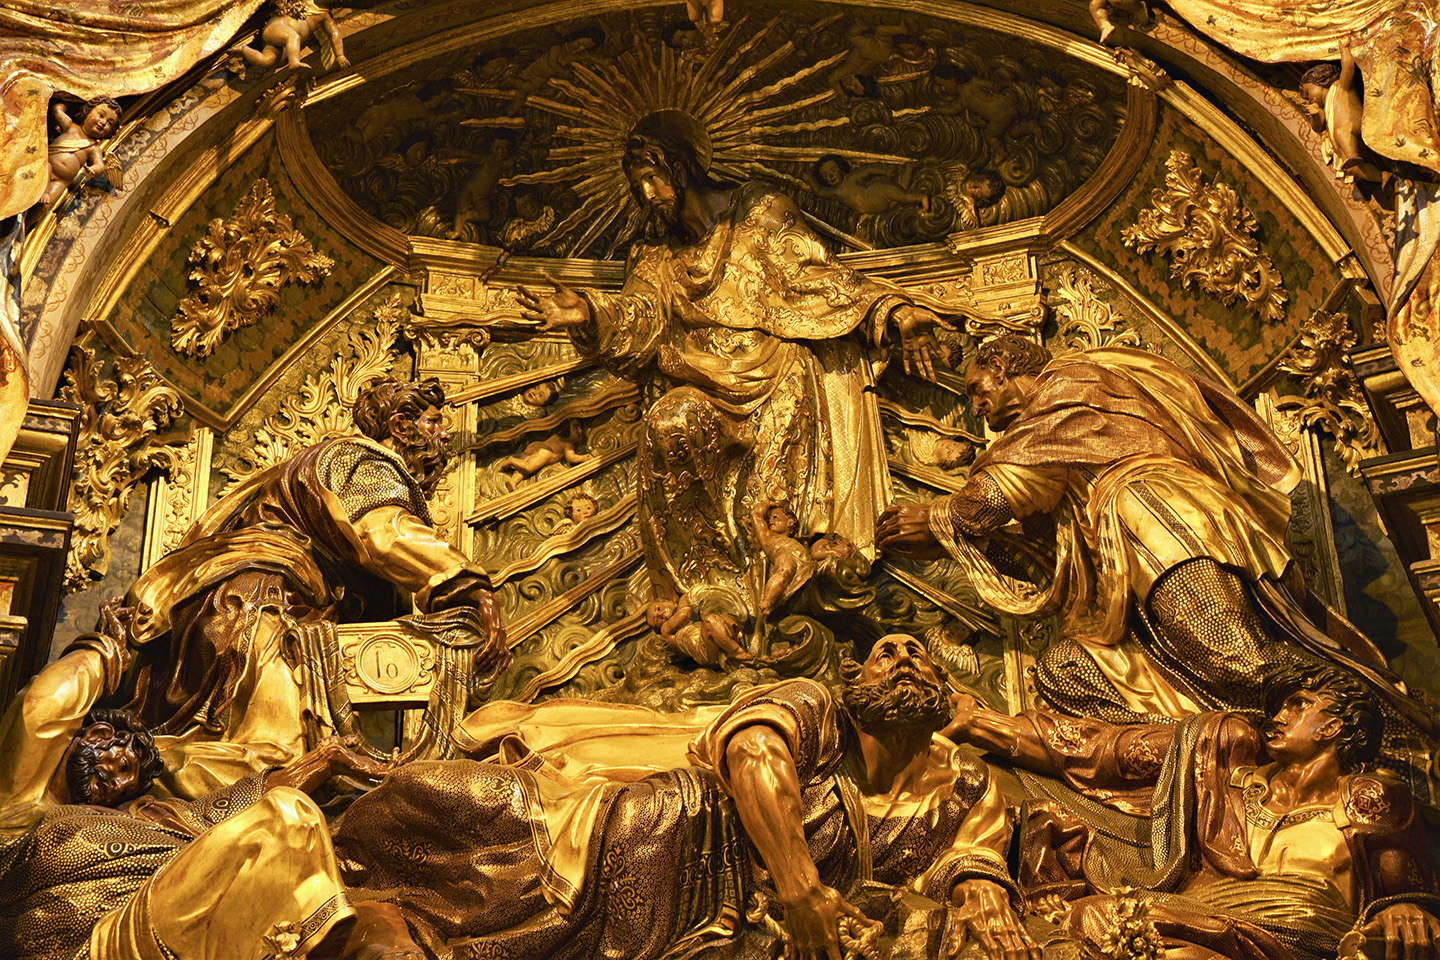 Chi tiết tác phẩm “The Transfiguration of Christ” (Sự biến hình của Đấng Christ) từ bức điêu khắc chính sau điện thờ, của điêu khắc gia Alonso Berruguete, khoảng năm 1560. Sacra Capilla del Salvador (Nhà nguyện thánh El Salvador), thành phố Úbeda, Tây Ban Nha. (Ảnh: Peter Heidelberg/Shutterstock)